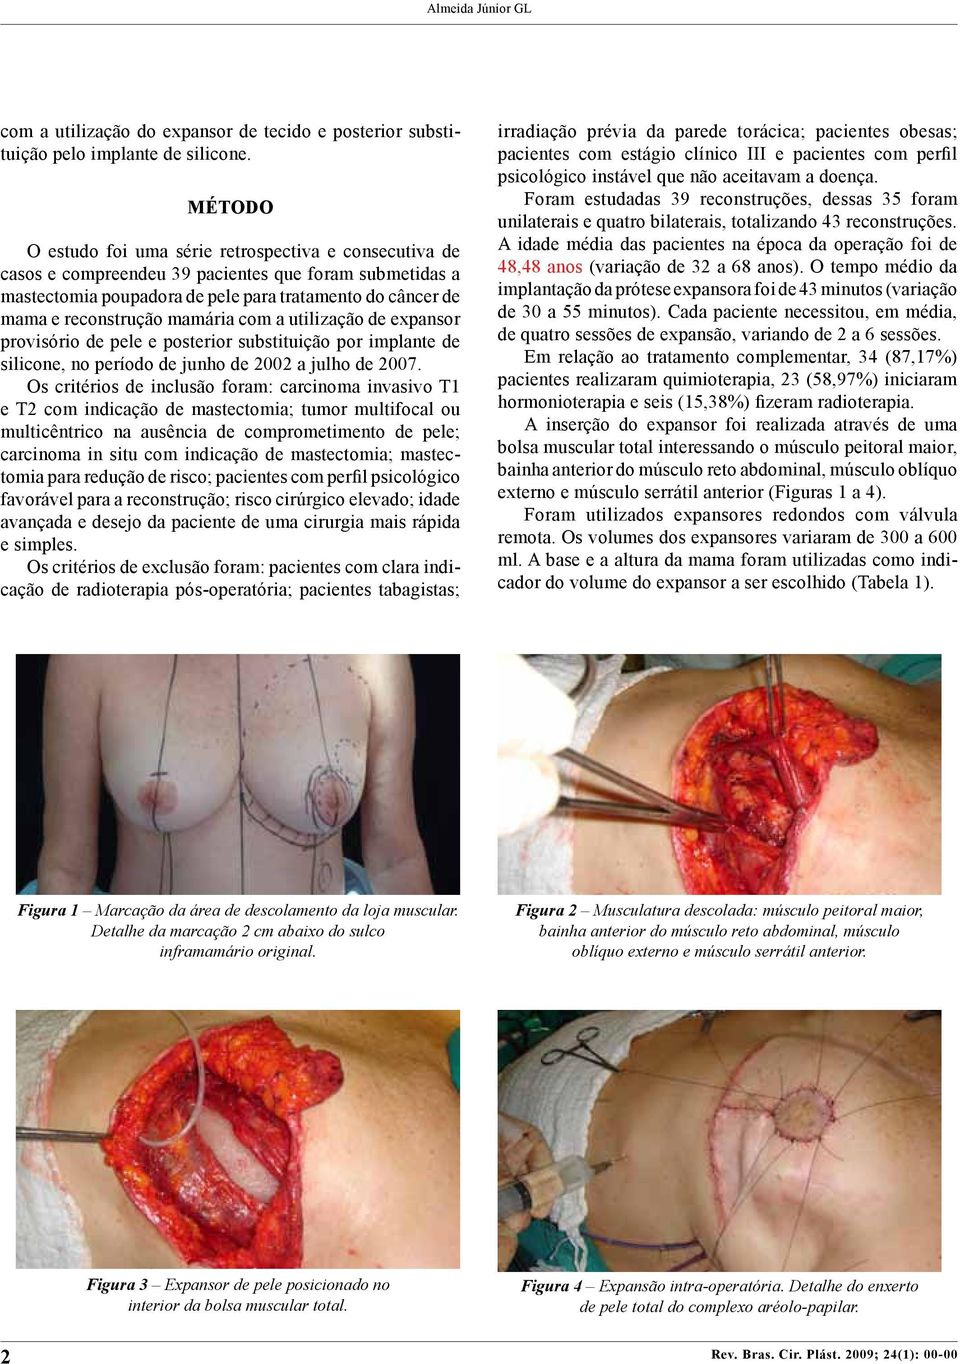 mamária com a utilização de expansor provisório de pele e posterior substituição por implante de silicone, no período de junho de 2002 a julho de 2007.